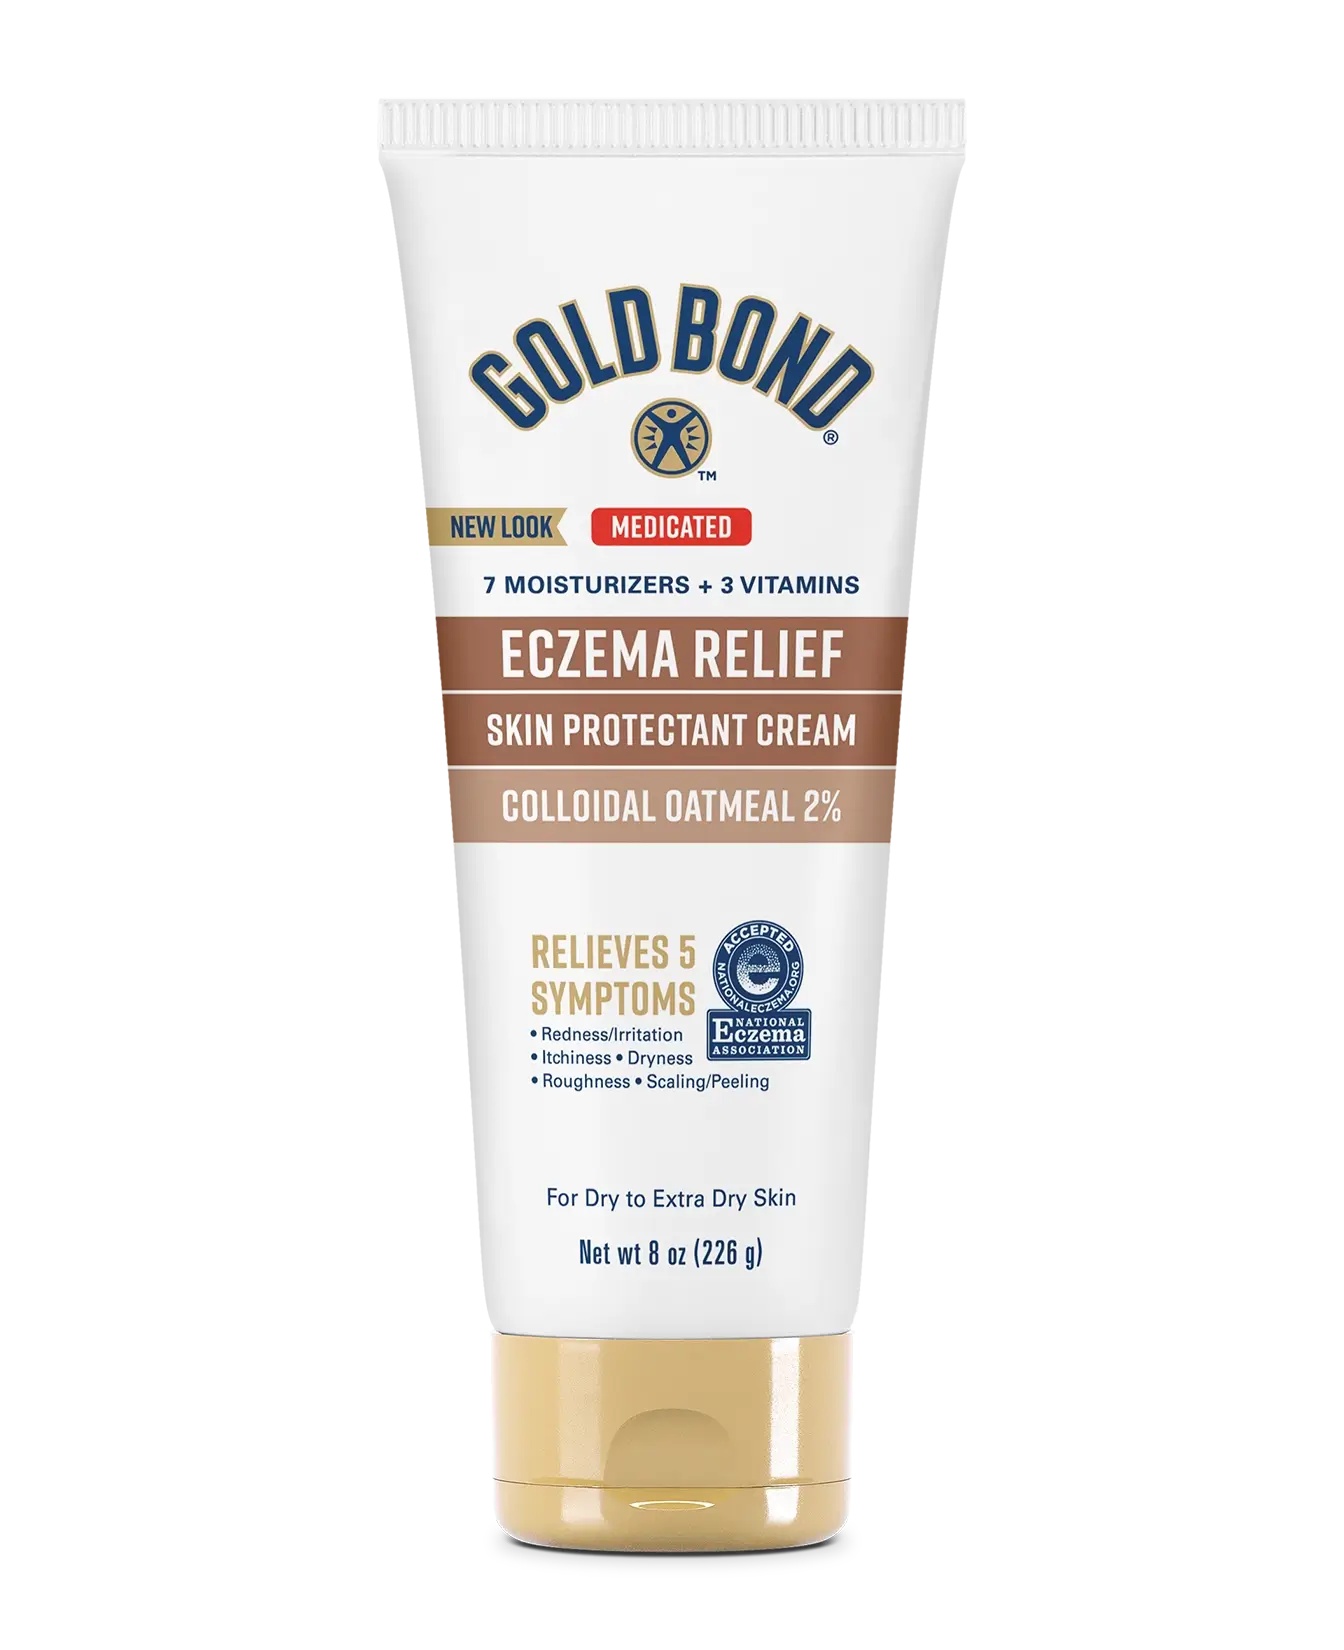 FEMMENORDIC's choice in the Gold Bond Eczema Relief vs Aveeno Eczema Therapy comparison, the Gold Bond Cream for Eczema Relief